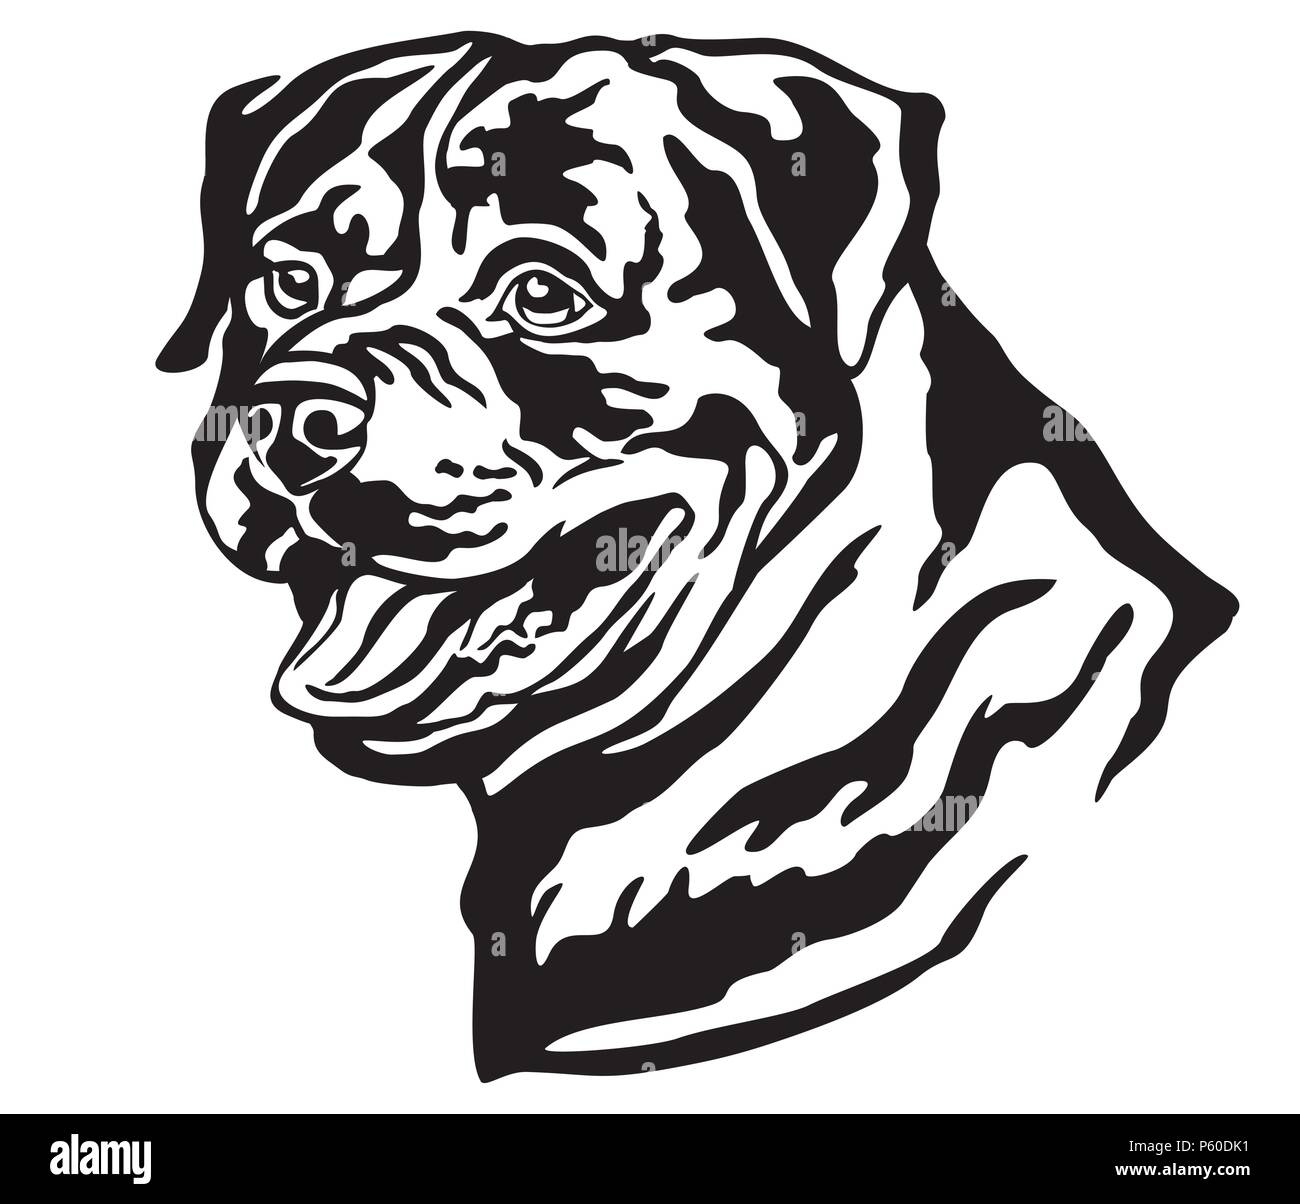 Dekorative Portrait von Hund Rottweiler, Vektor isoliert Abbildung in schwarz auf weißem Hintergrund. Bild für Design und Tattoo. Stock Vektor